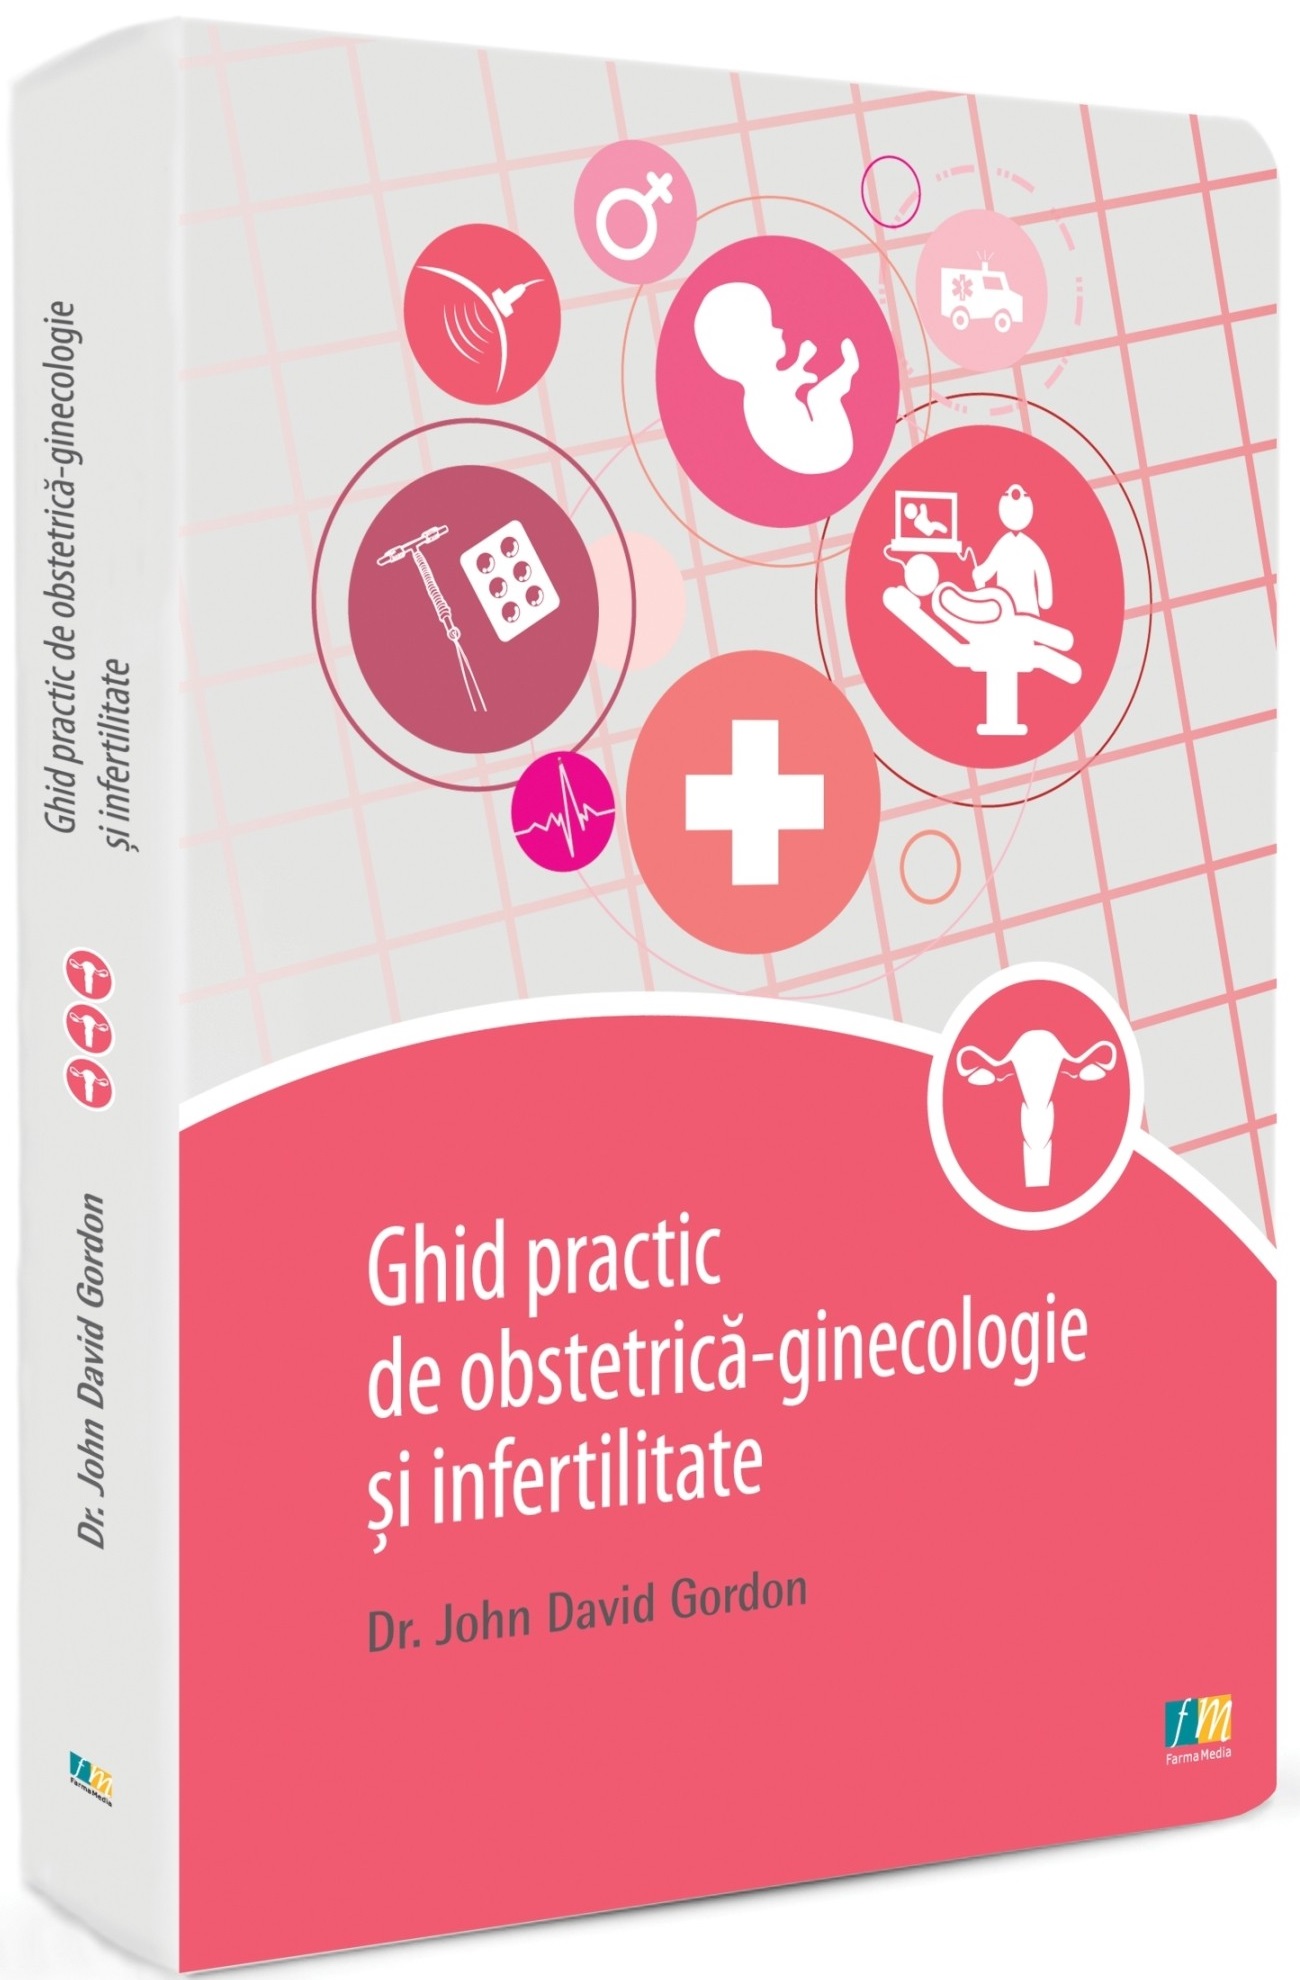 Ghid practic de obstetrica-ginecologie si infertilitate | John David Gordon Pret Mic Carte imagine 2021